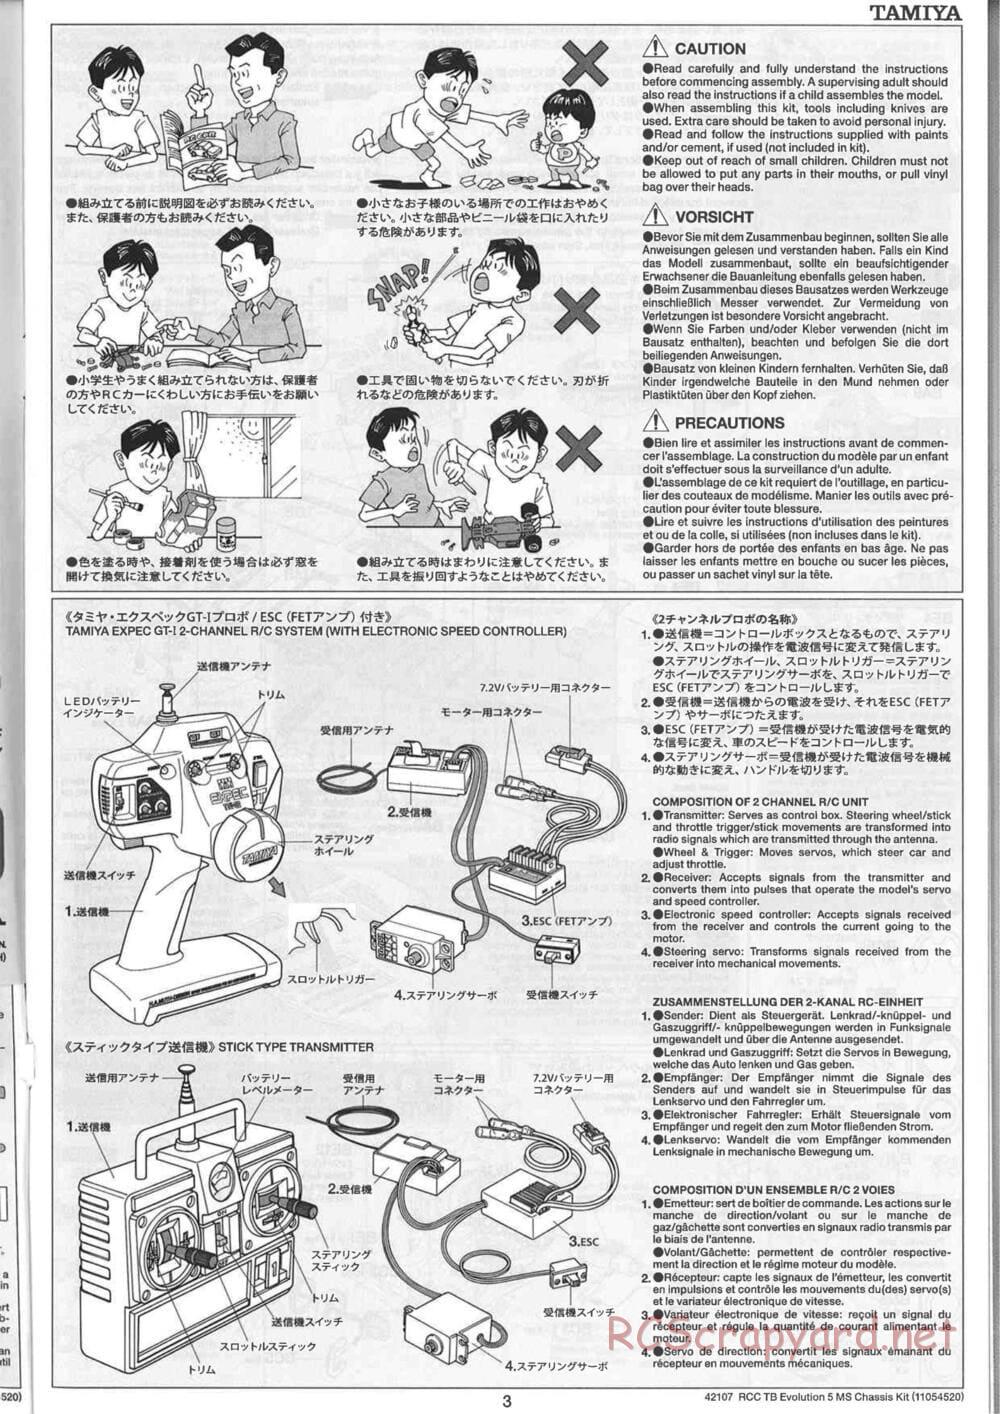 Tamiya - TB Evolution 5 MS Chassis - Manual - Page 3